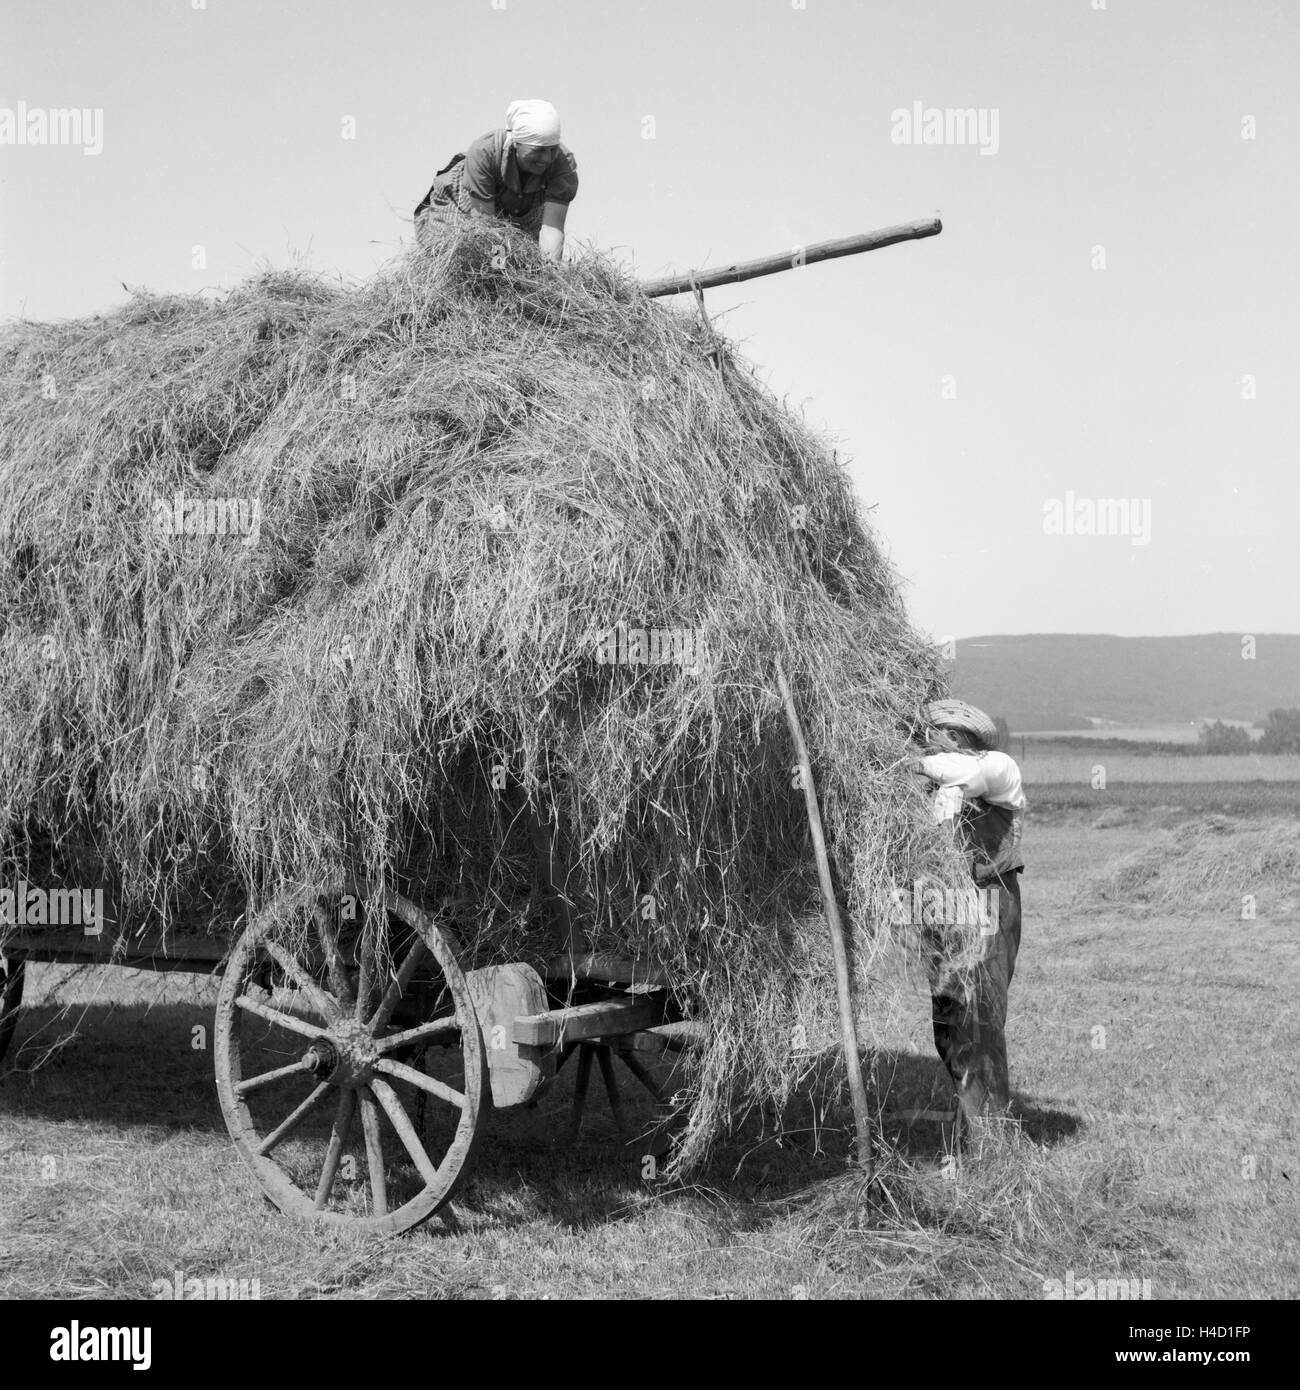 Bauern bei der Heuernte in Westfalen, Deutschland 1930er Jahre. Farmers harvesting hay at Wesfalia, Germany 1930s. Stock Photo